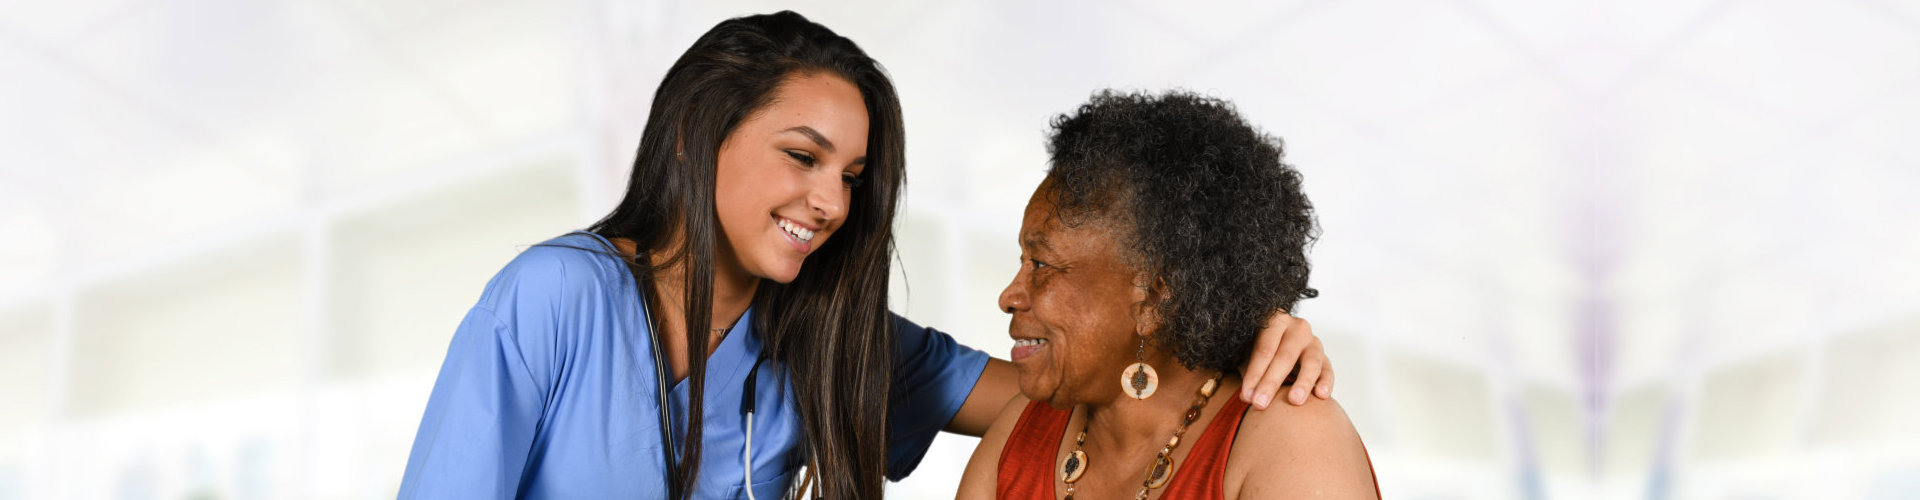 nurse attending to elderly woman